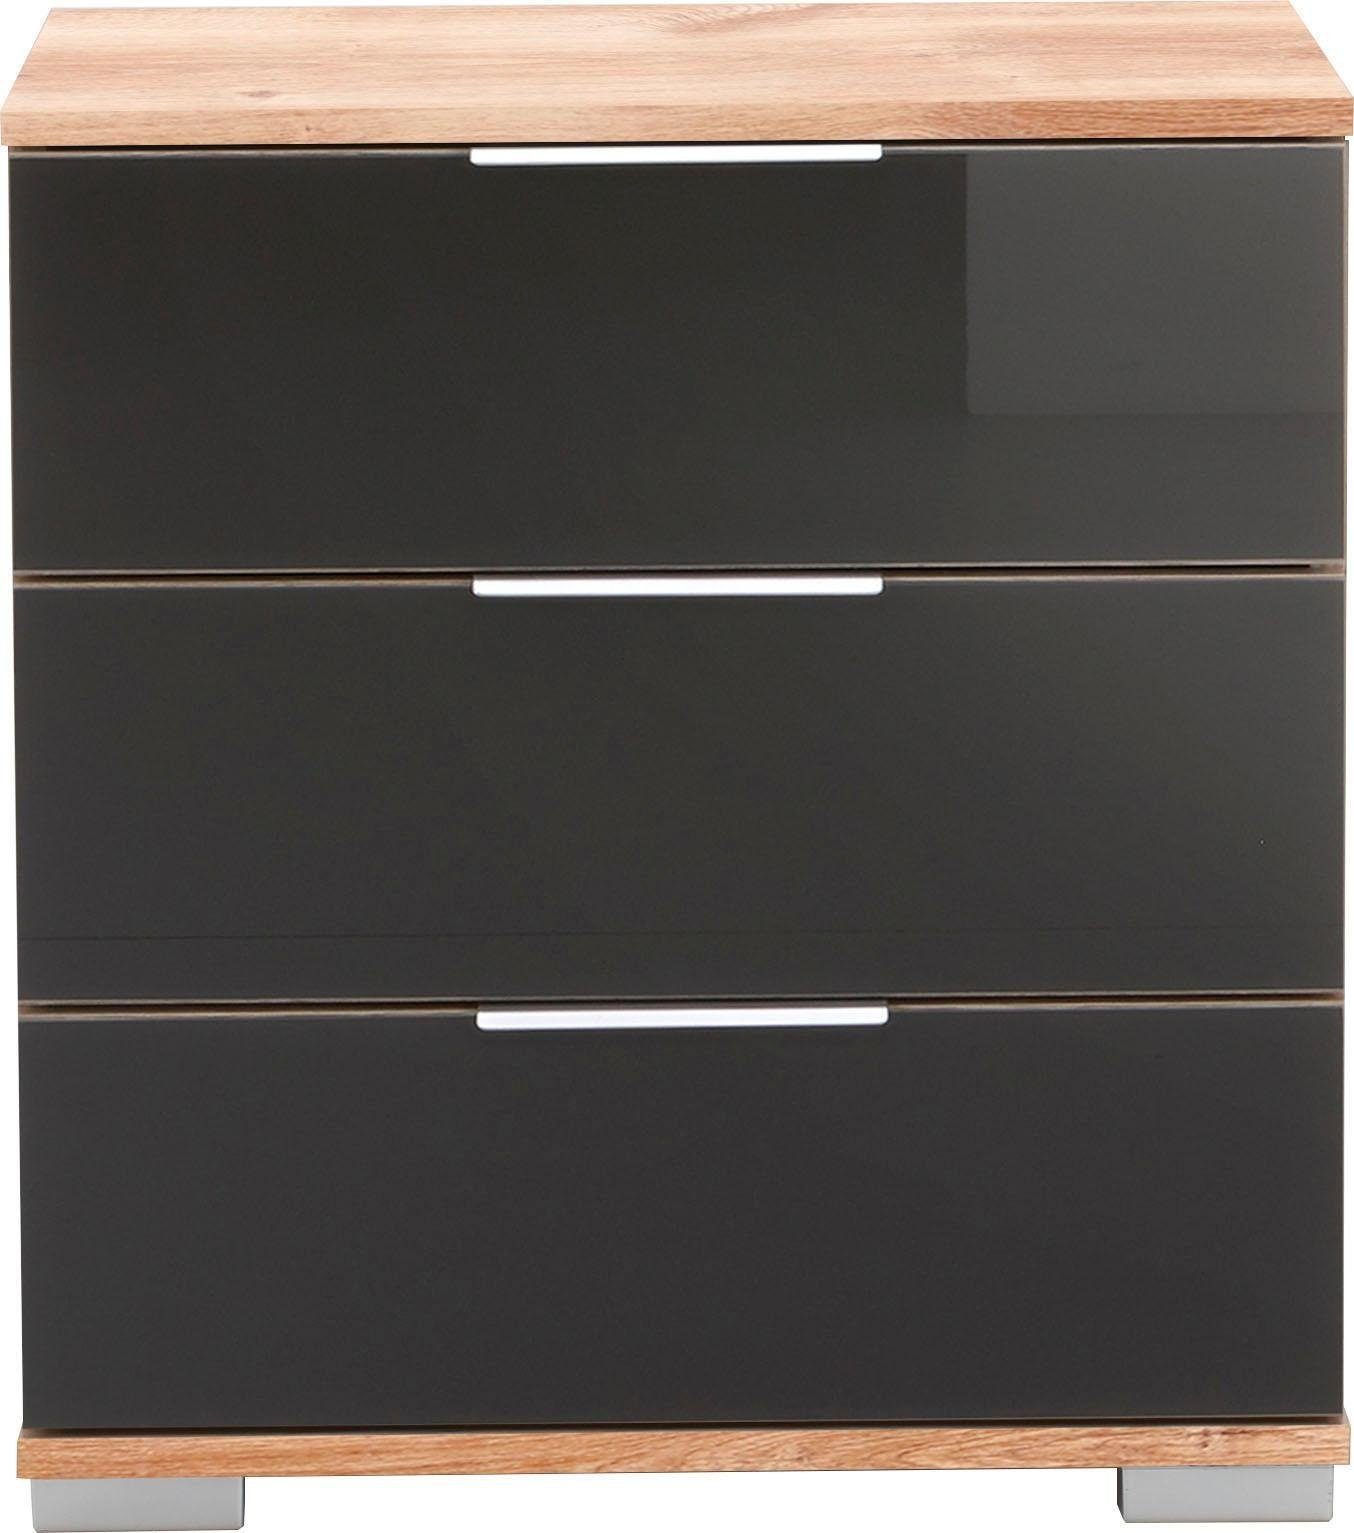 Wimex Nachtkonsole Easy, mit Glas- oder Spiegelfront plankeneichefarben/Grauglas